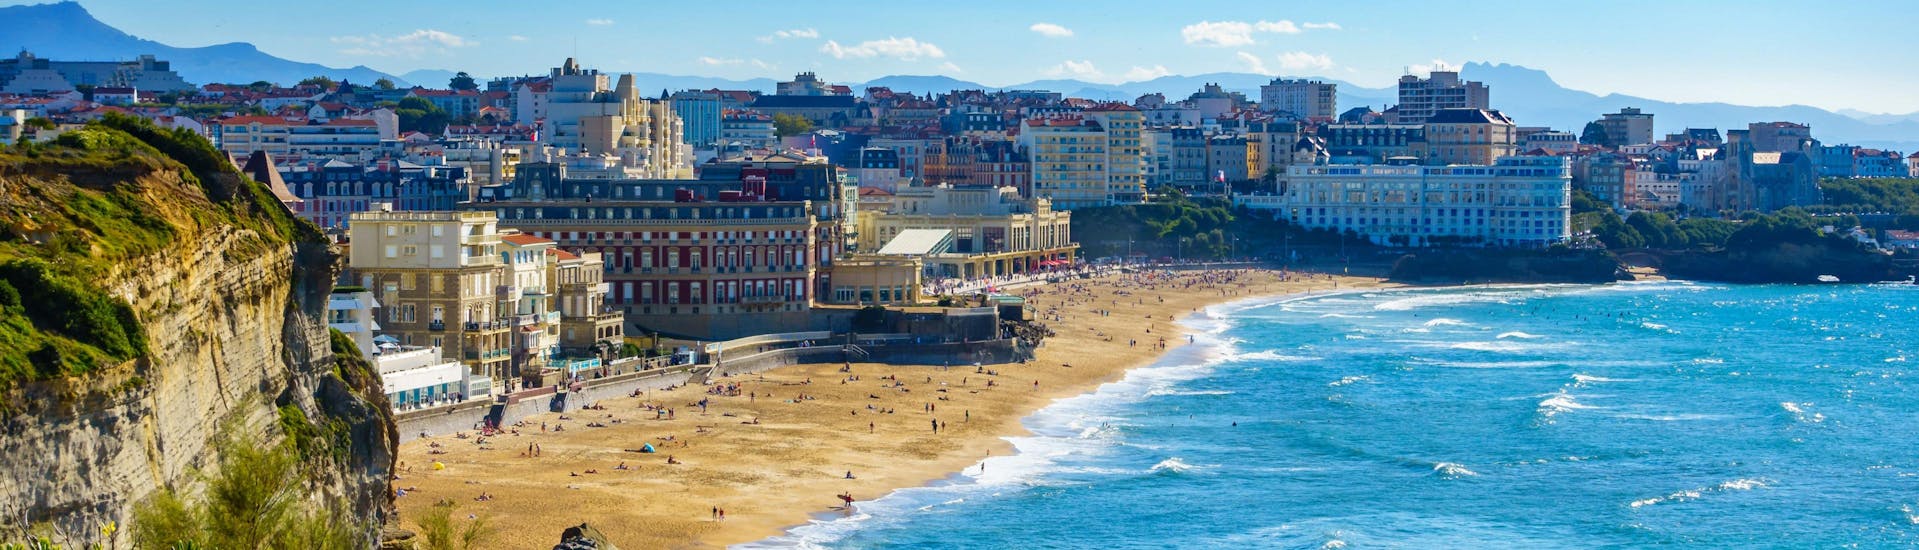 Vue de la baie de Biarritz et sa Grand Plage, l'un des hotspots de surf dans le Pays basque français.